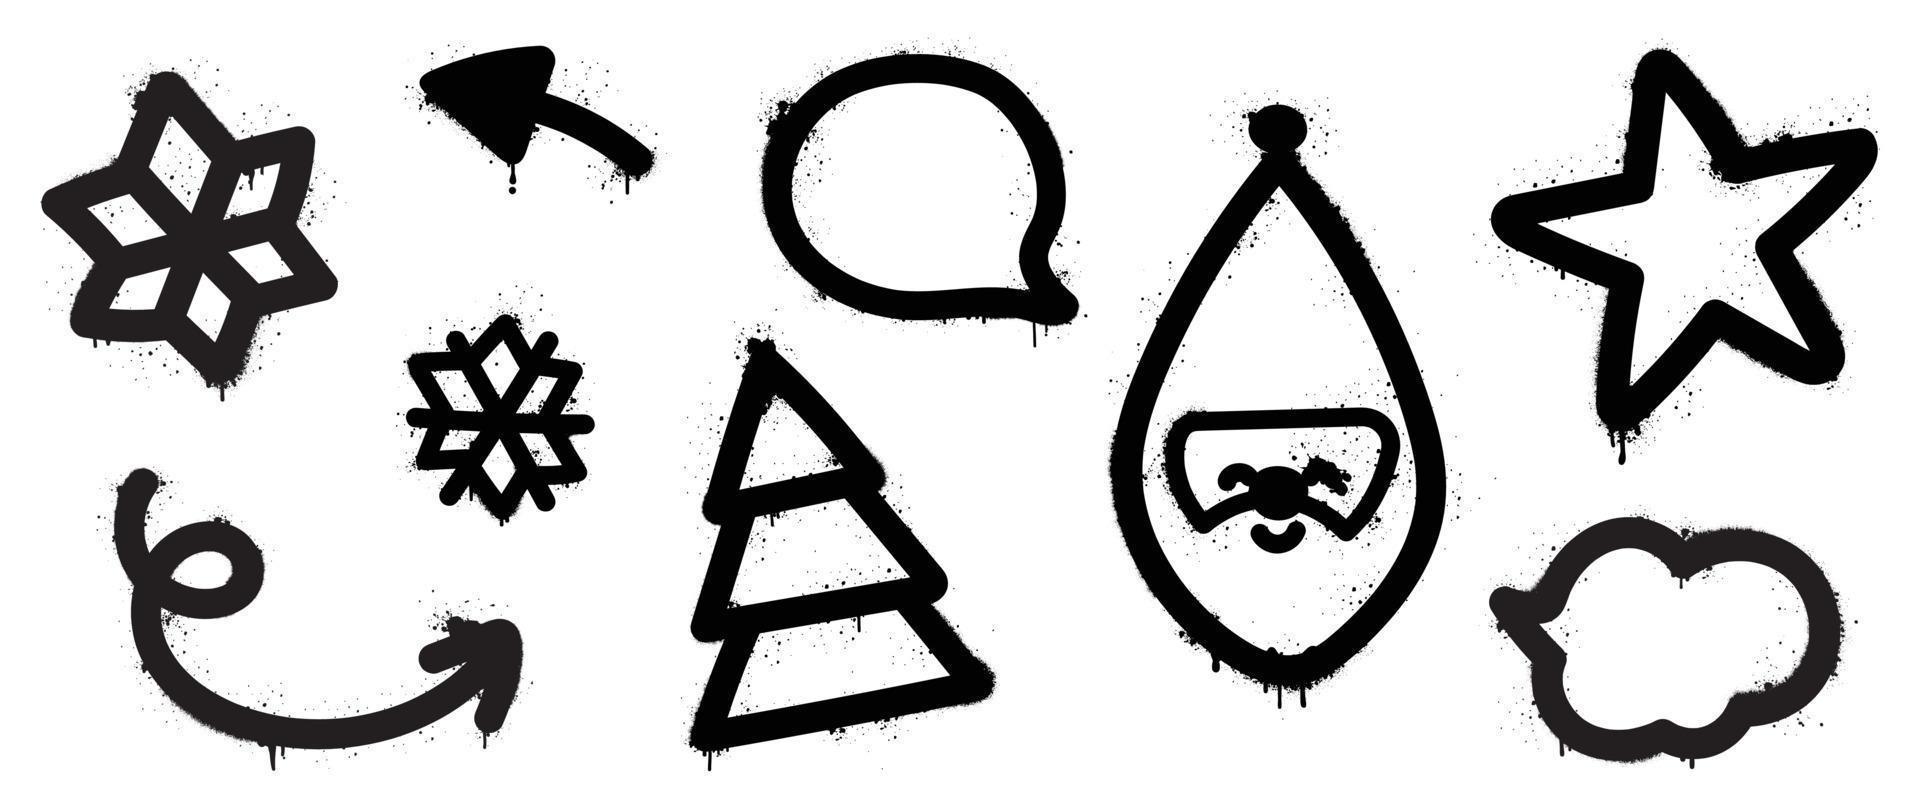 conjunto de elementos navideños vector de pintura en aerosol negro. graffiti, elementos grunge de copo de nieve, flecha, árbol de navidad, santa, estrella sobre fondo blanco. ilustración de diseño para decoración, tarjeta, pegatina.